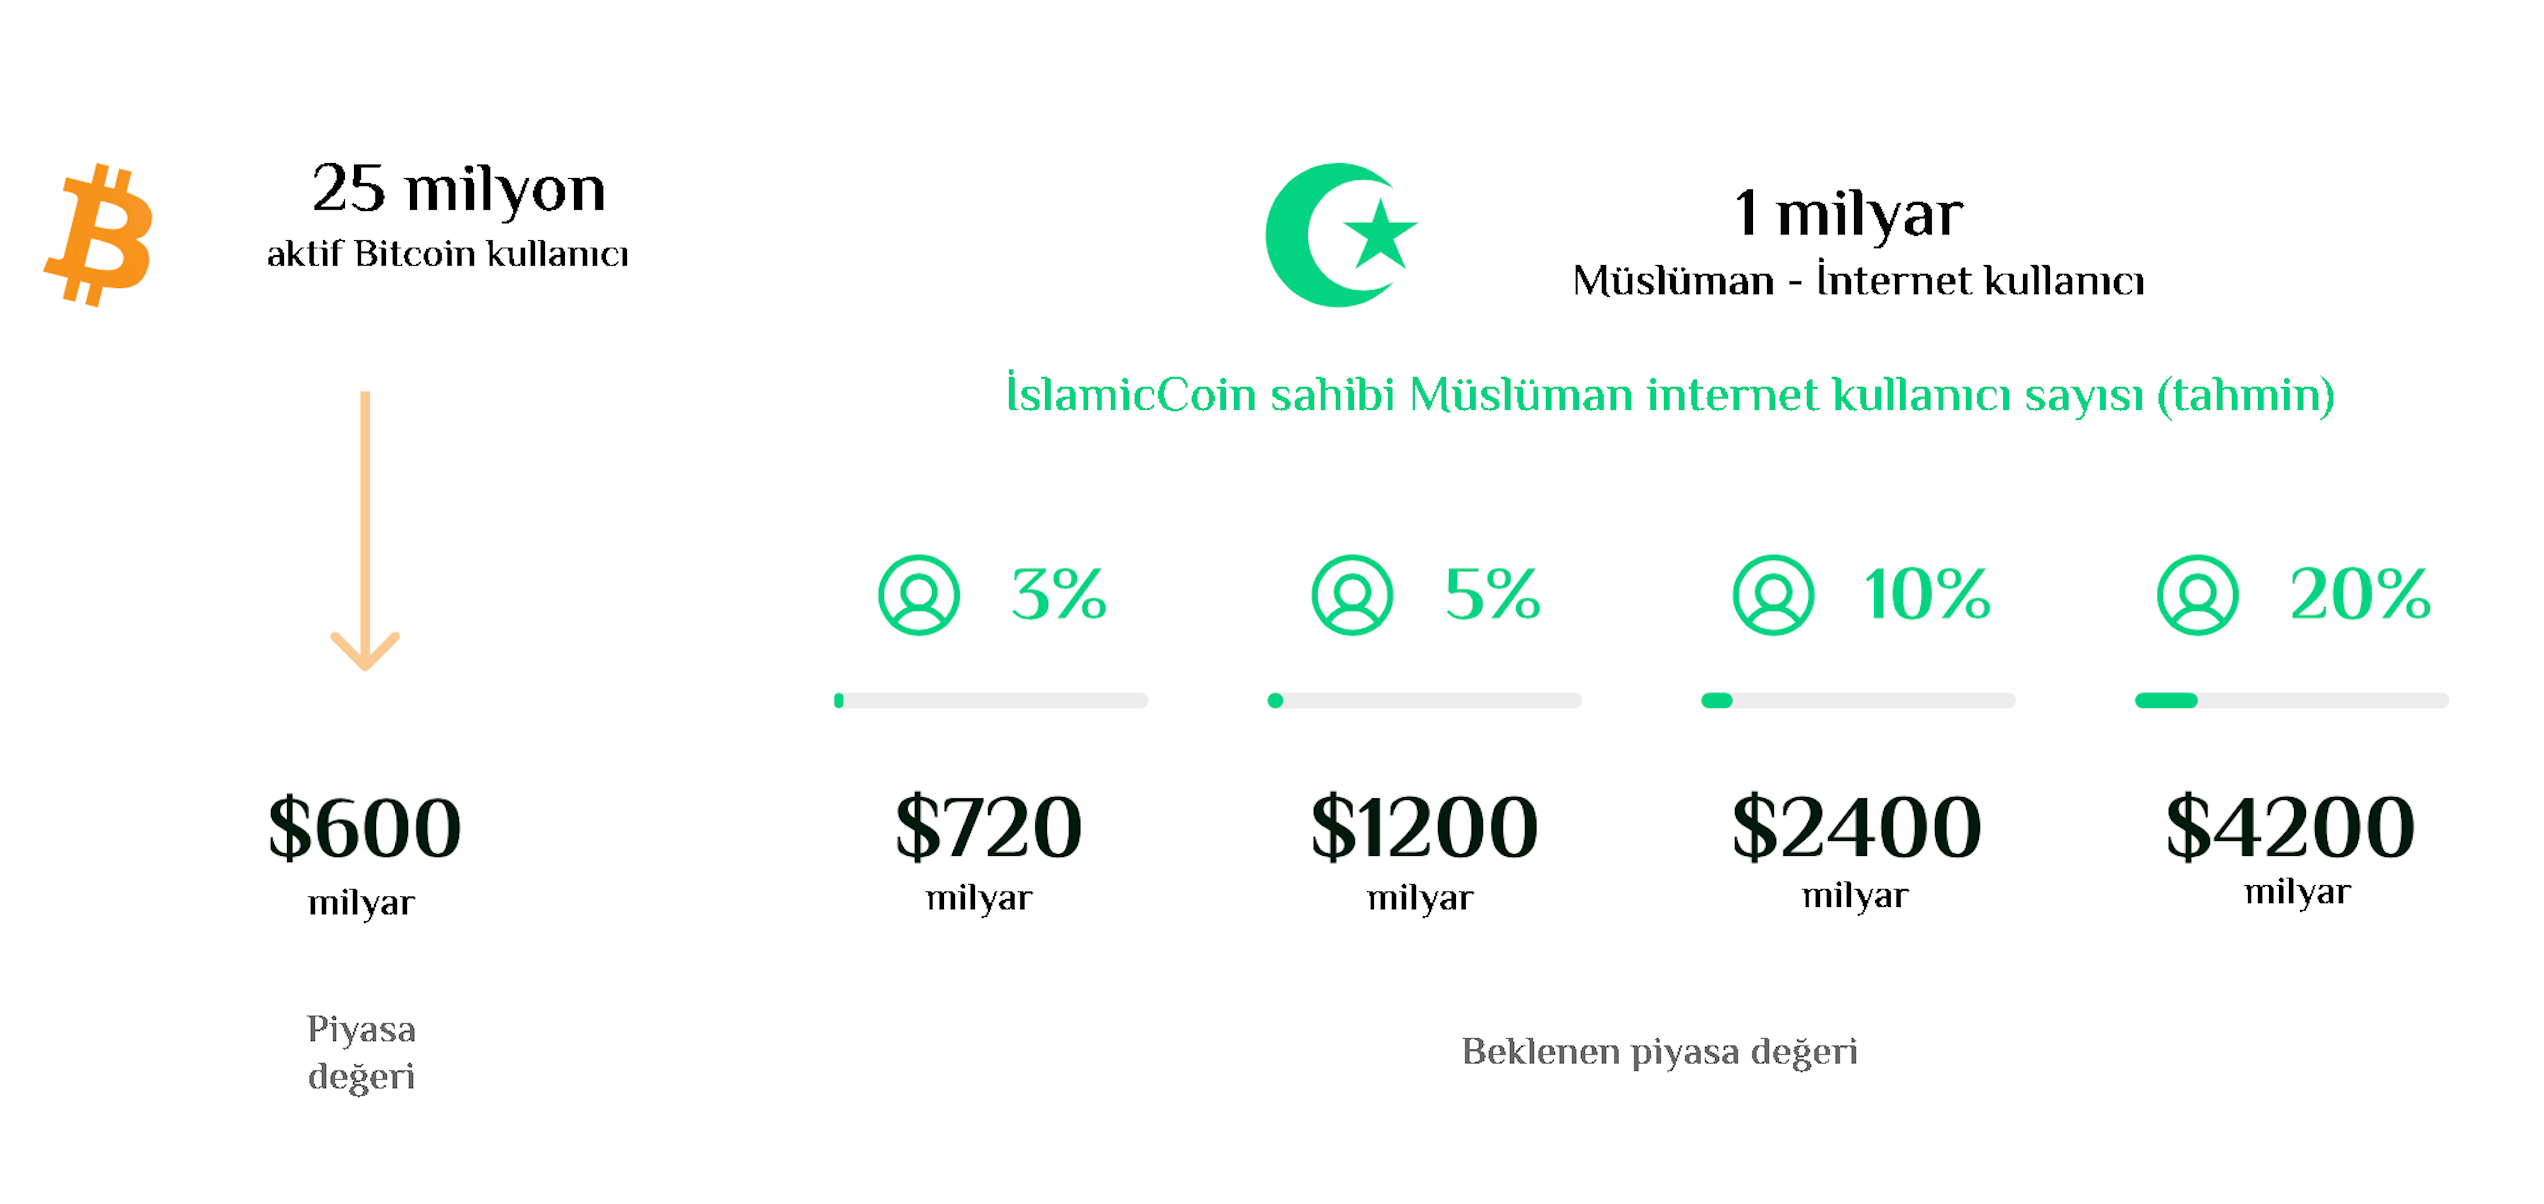 Islamic Coin - benzersiz bir blockchain aracıdır